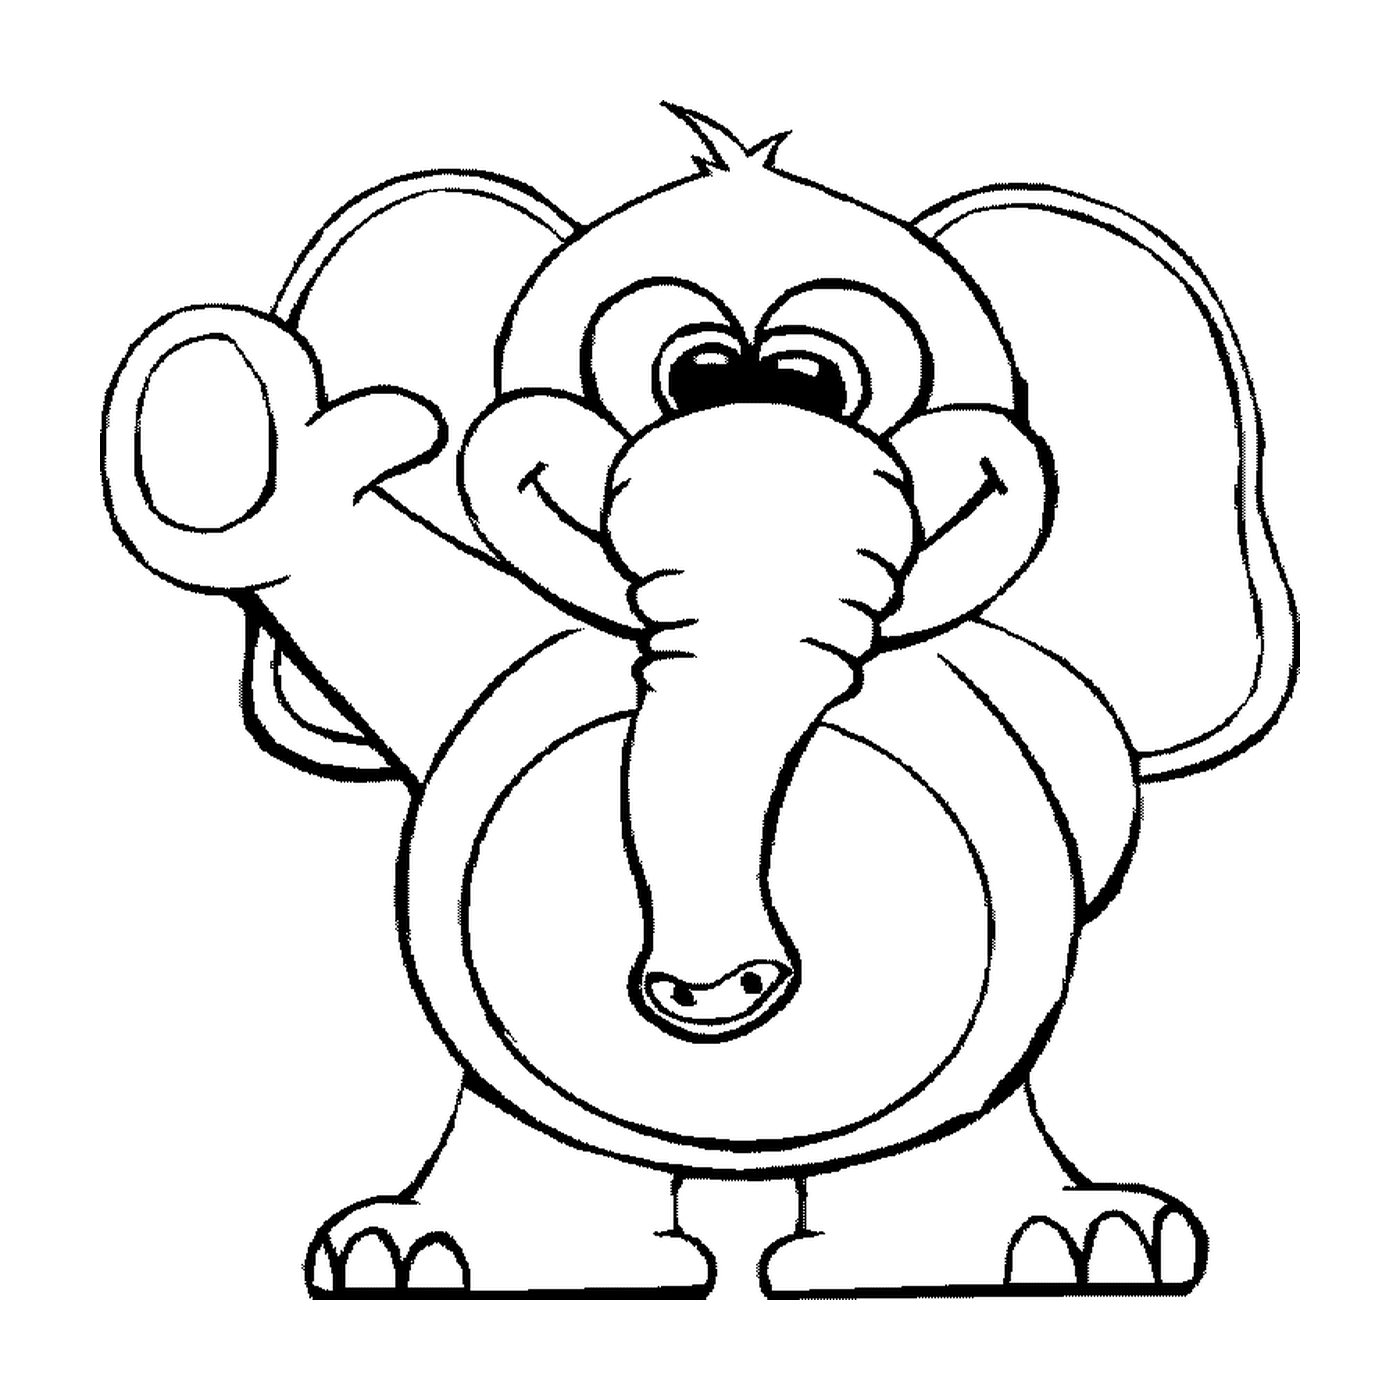  Слон в стиле мультфильма 